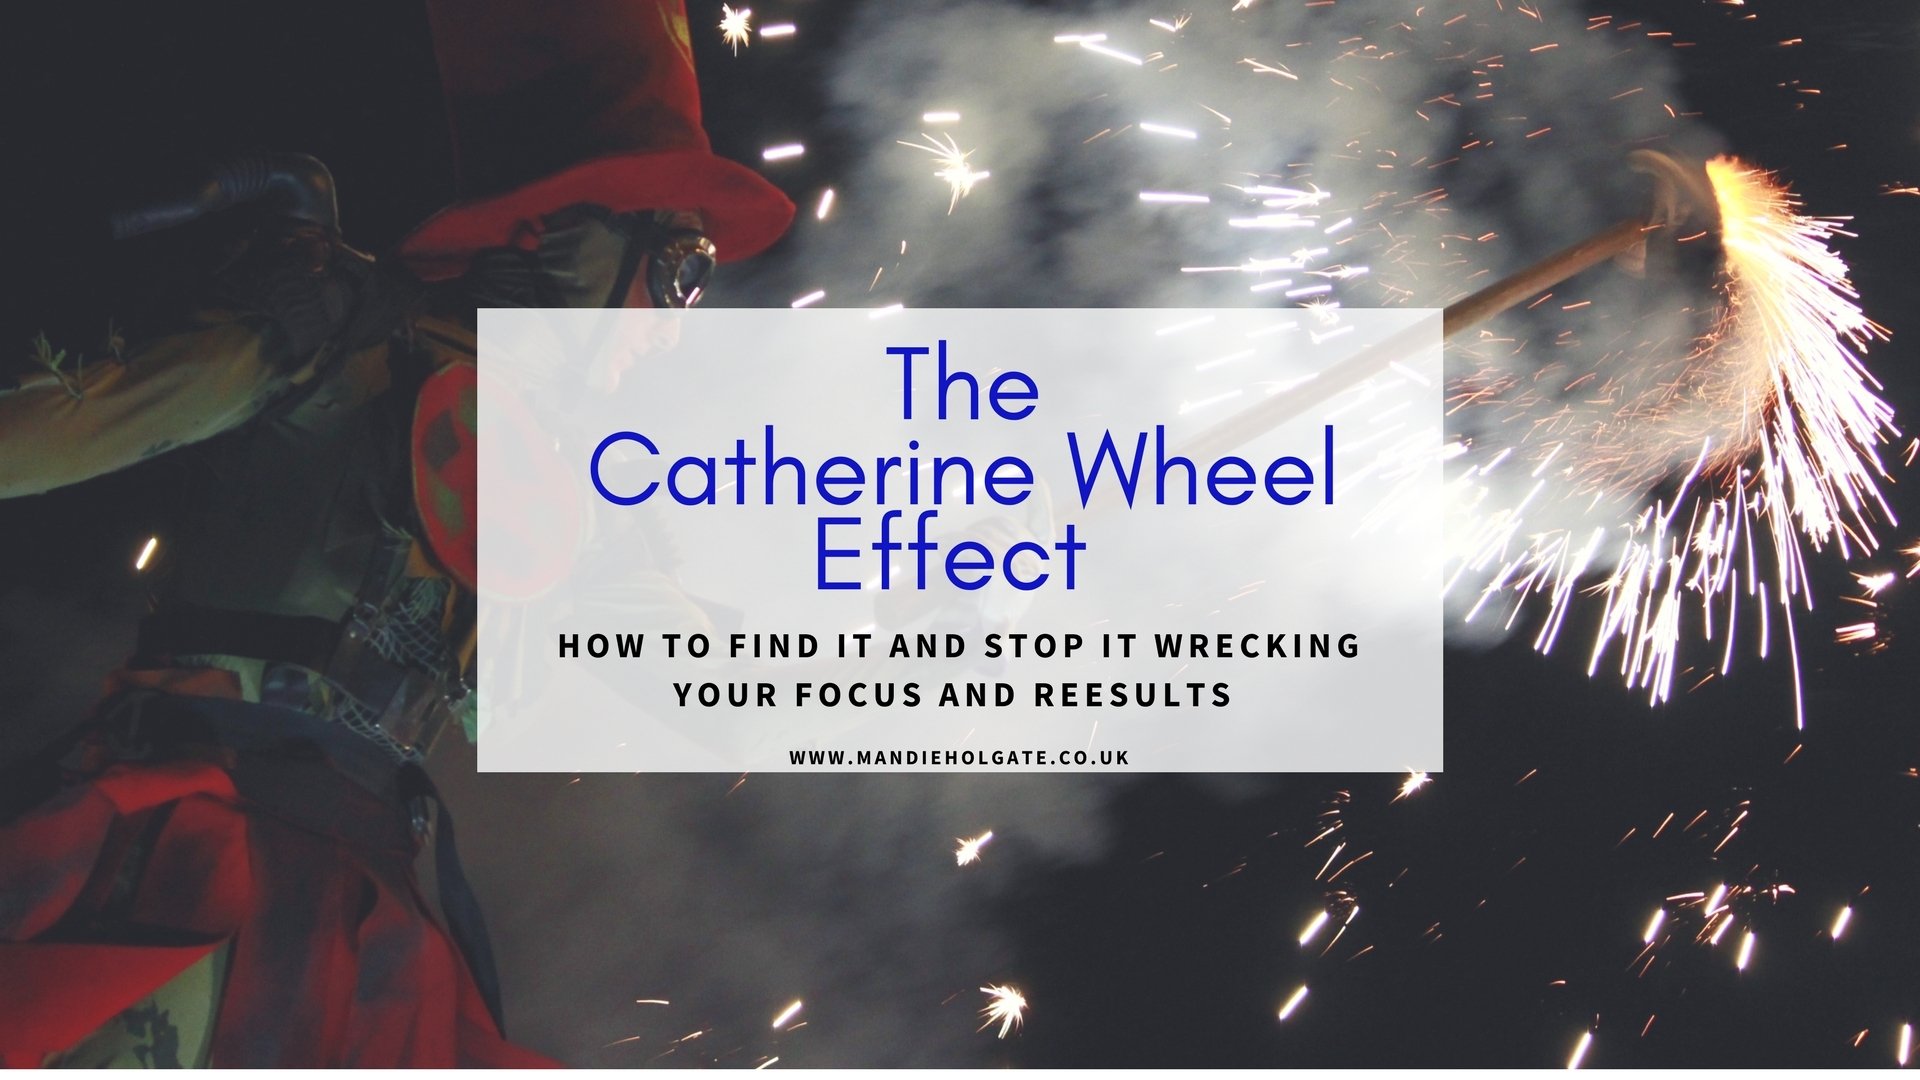 The Catherine Wheel Effect Mandie Holgate focus